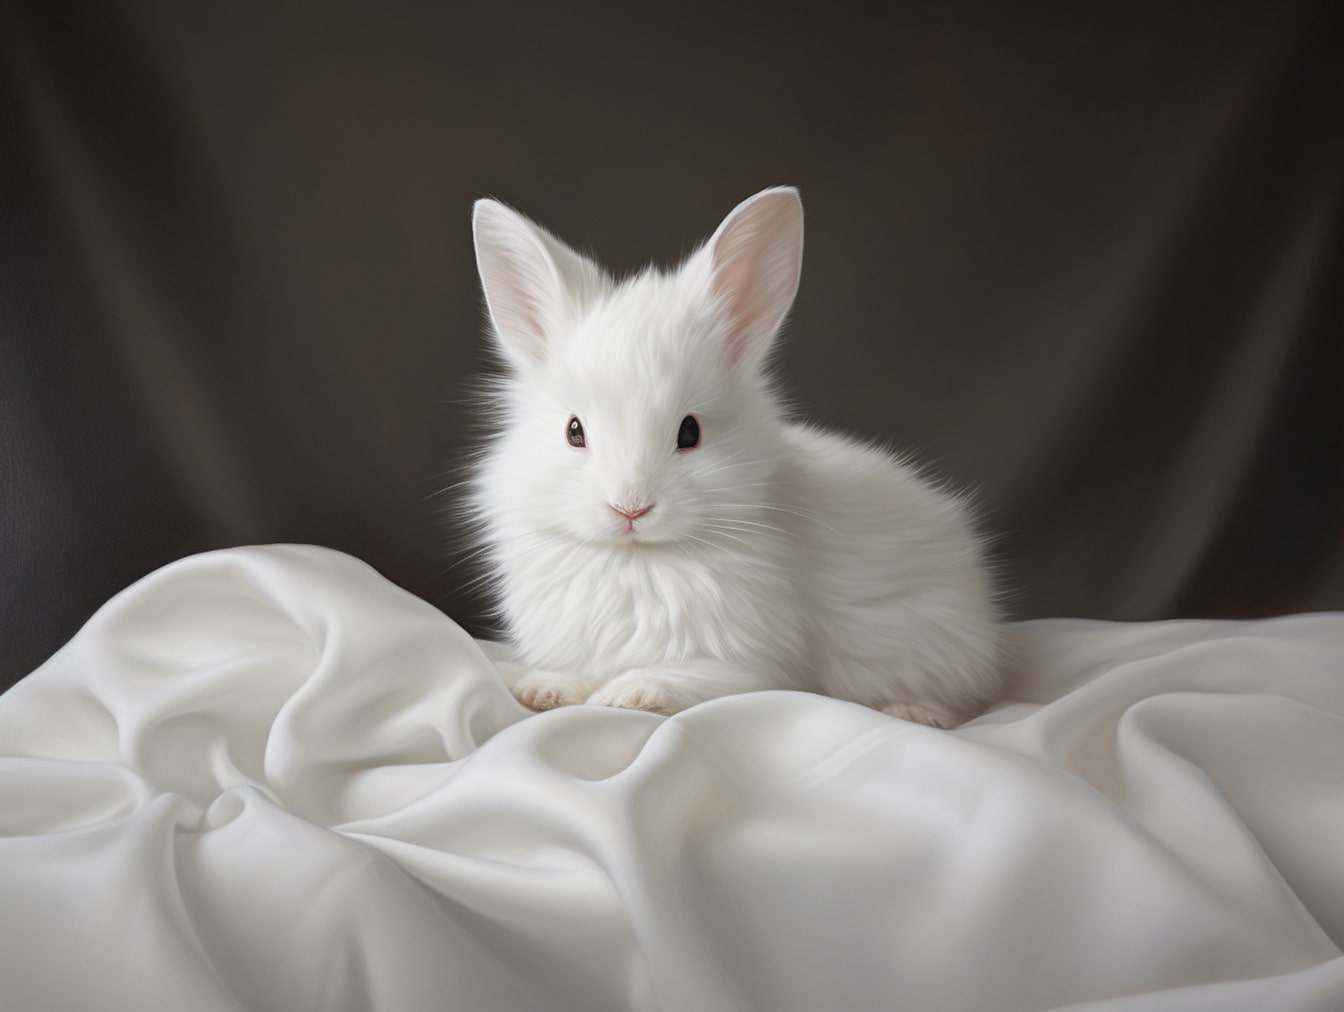 Majestueus wit konijntje op zijdecanvas met grijze achtergrond